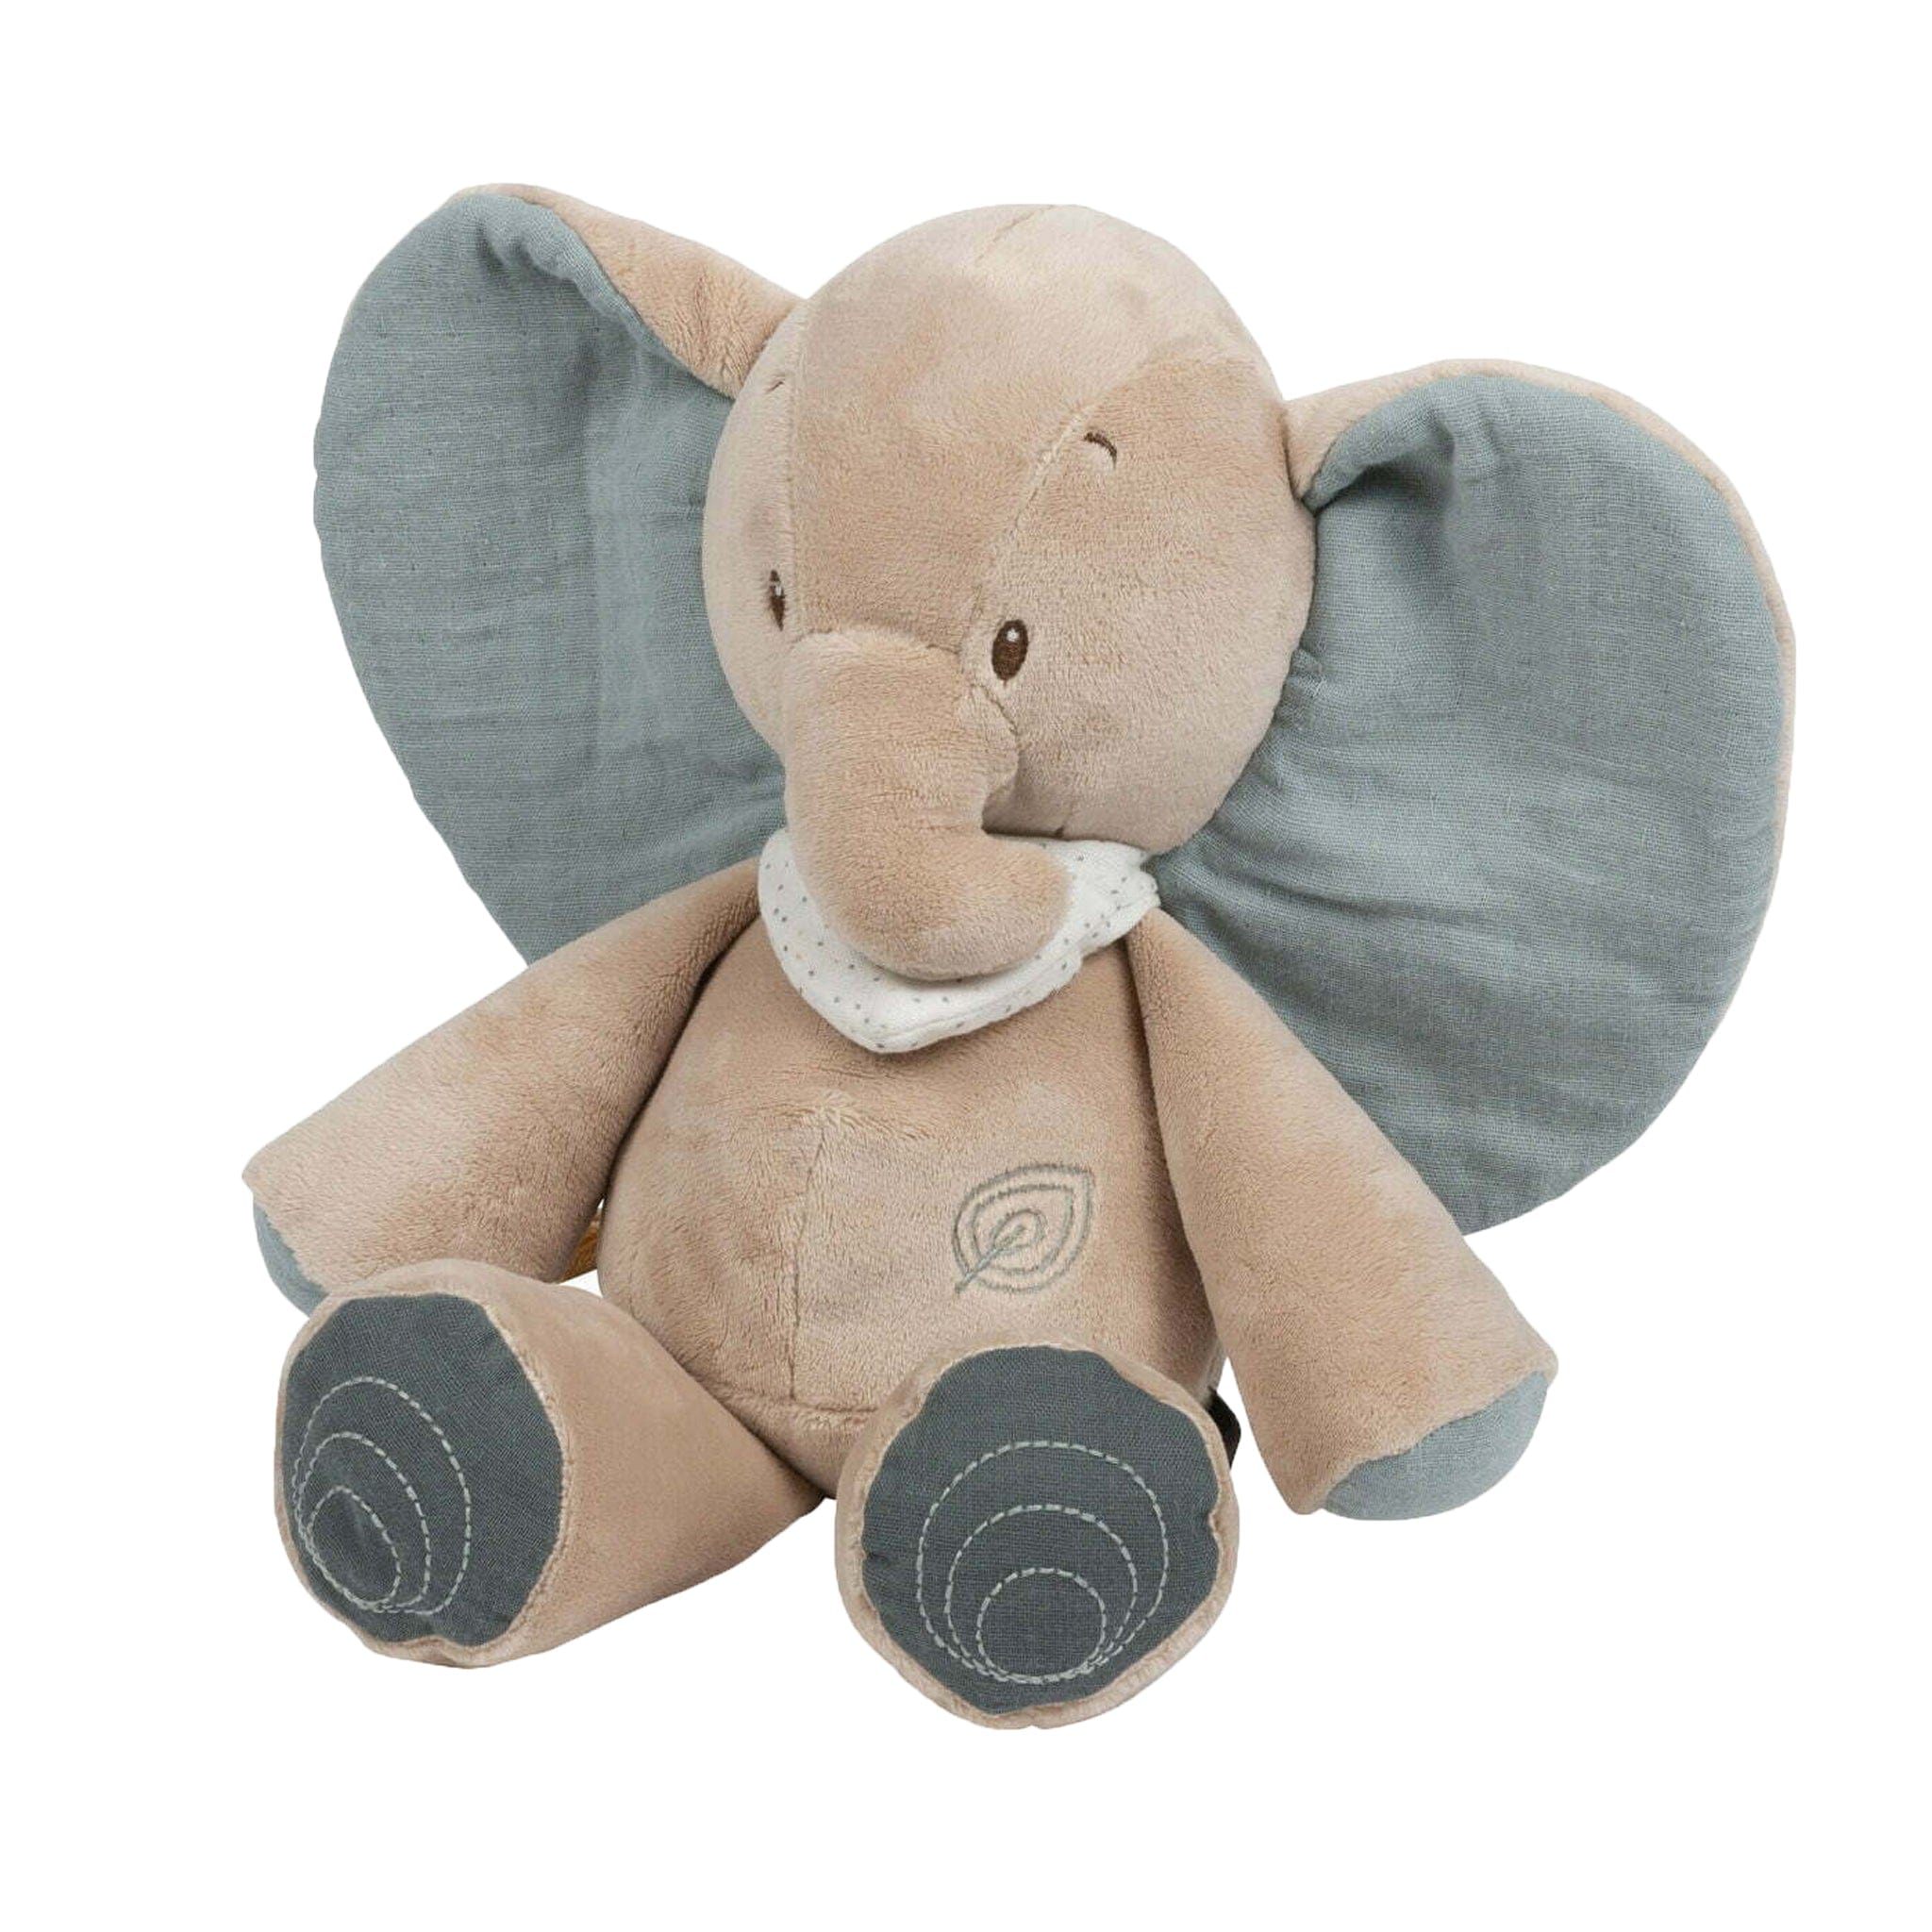 Nattou soft animals Nattou Axel Cuddly Elephant Toy NATLAX748025